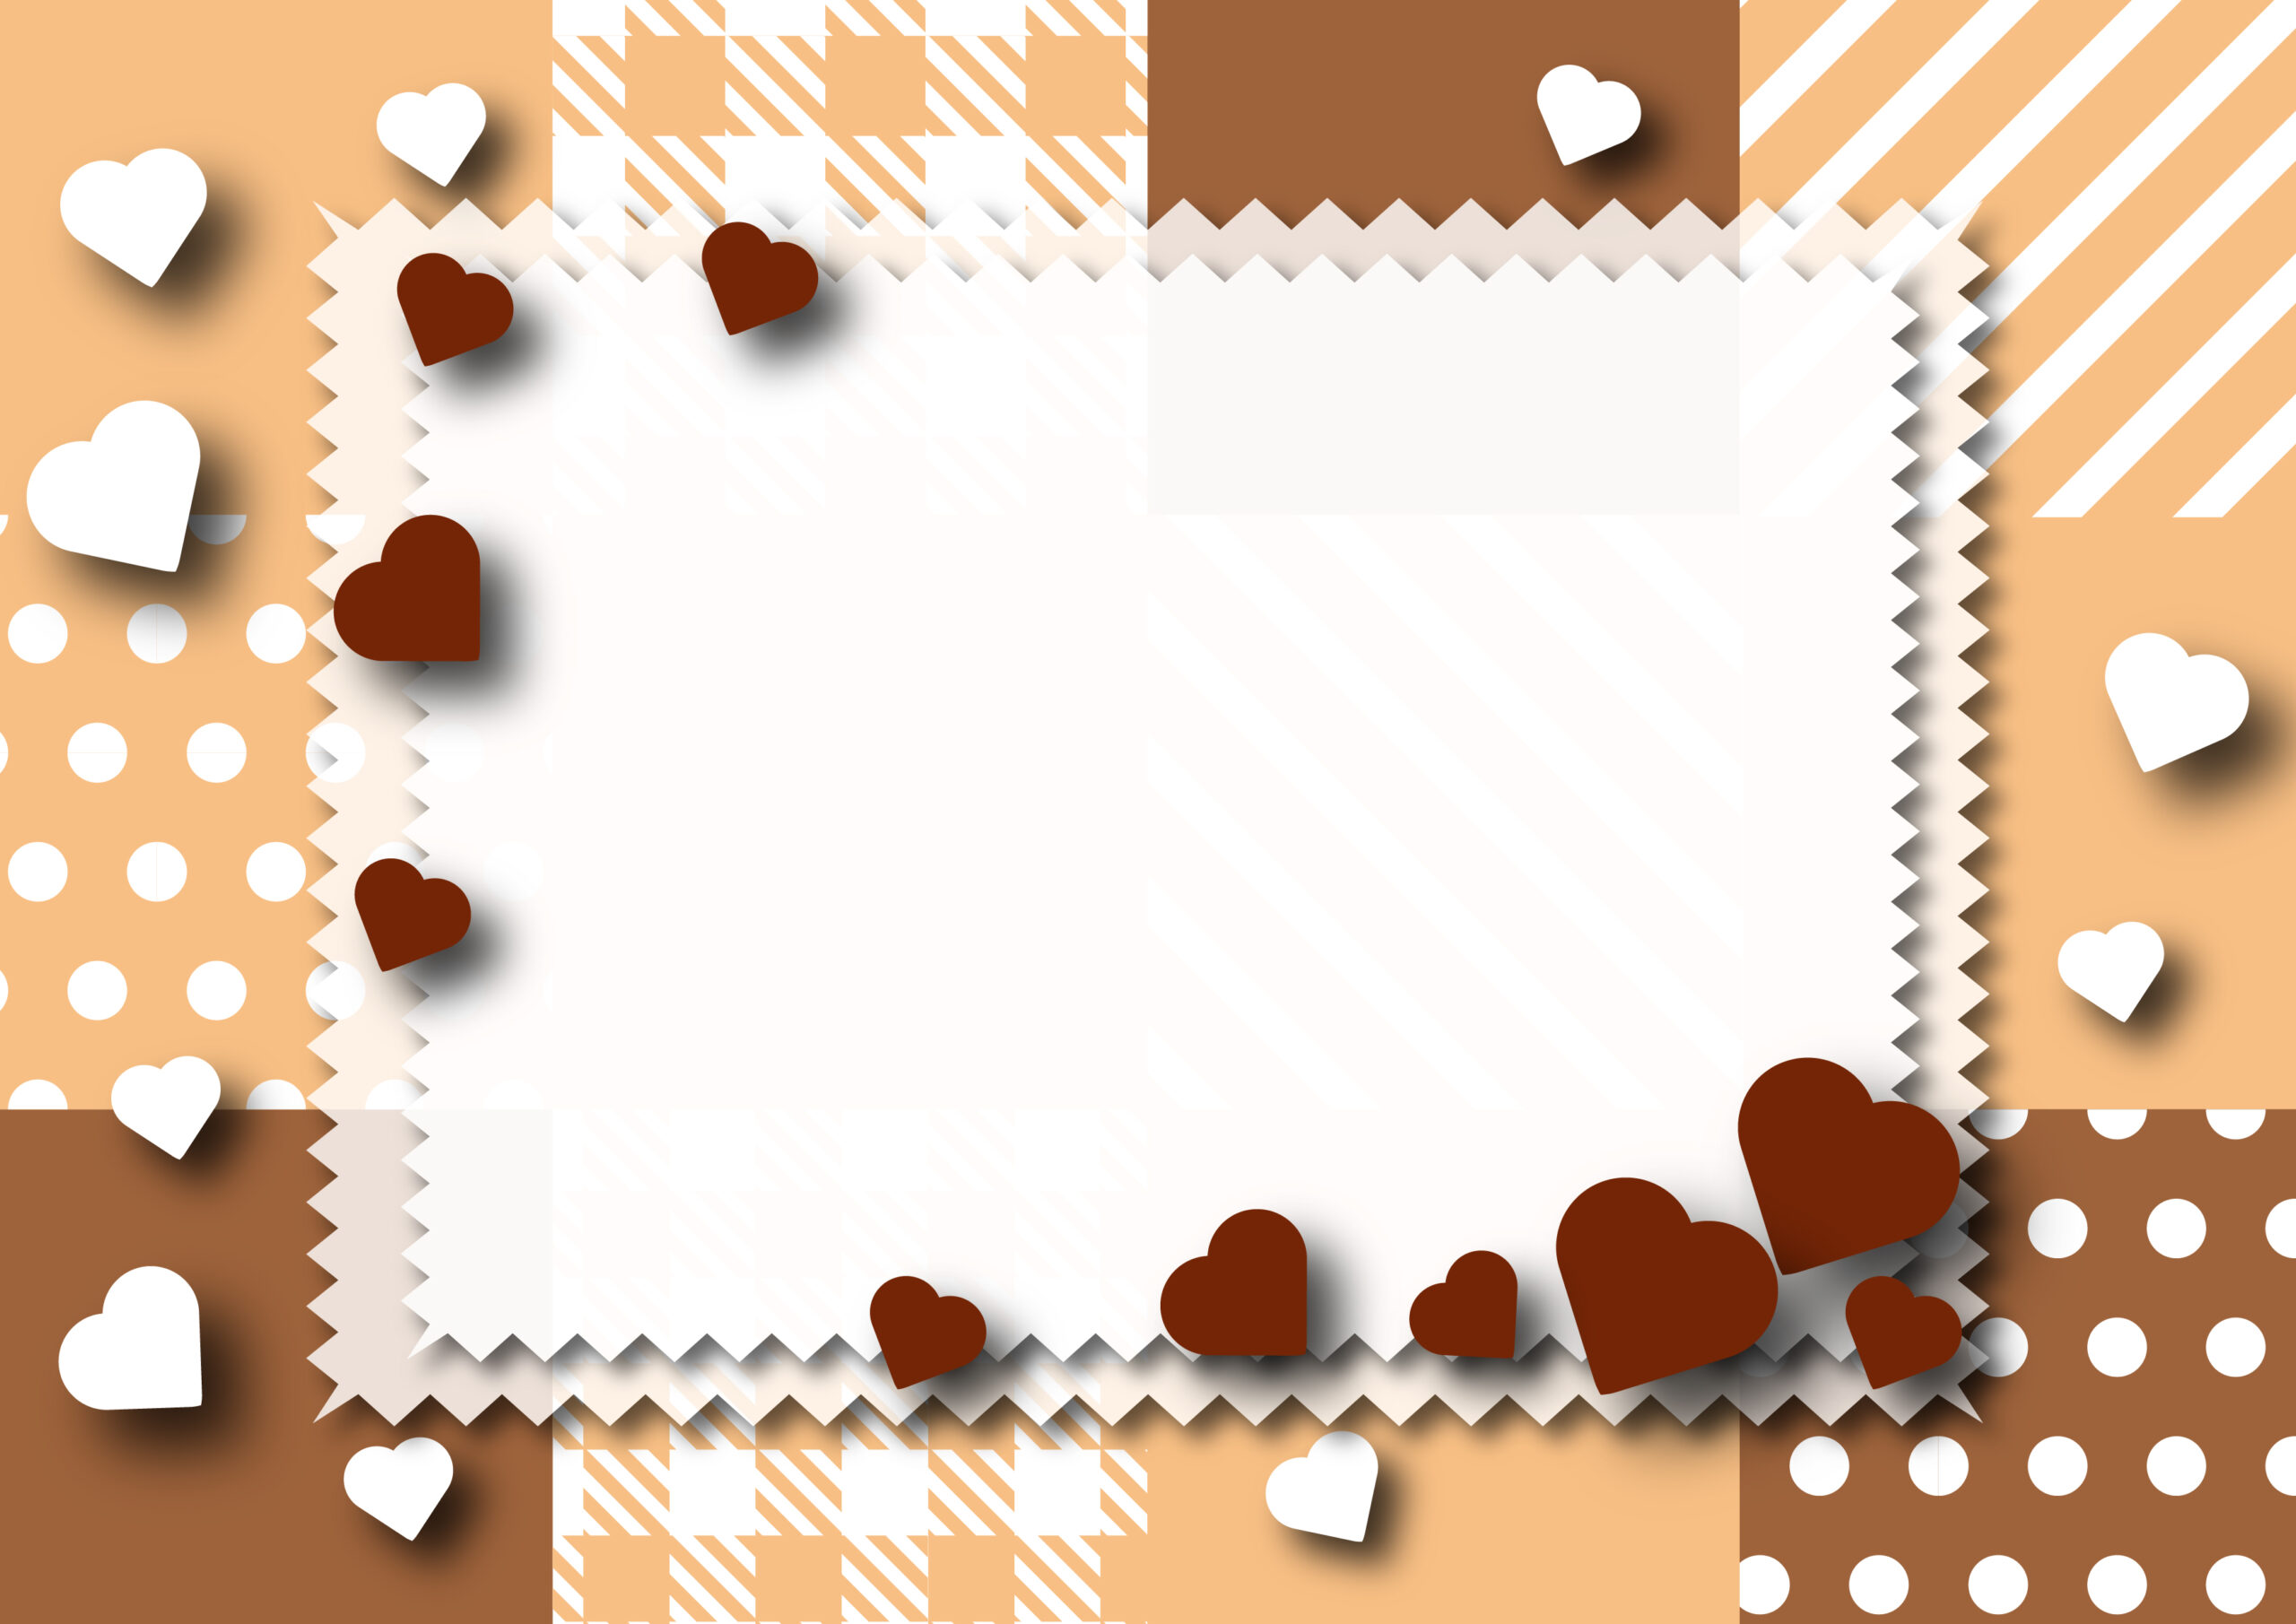 チョコレートカラーのデザインでバレンタインデーのメッセージカードにも使いやすいかわいいフレーム・ハートのイラストやチェック柄、水玉模様の背景が描かれたおしゃれなテンプレートになります。ダウンロード：JPGA4サイズで印刷